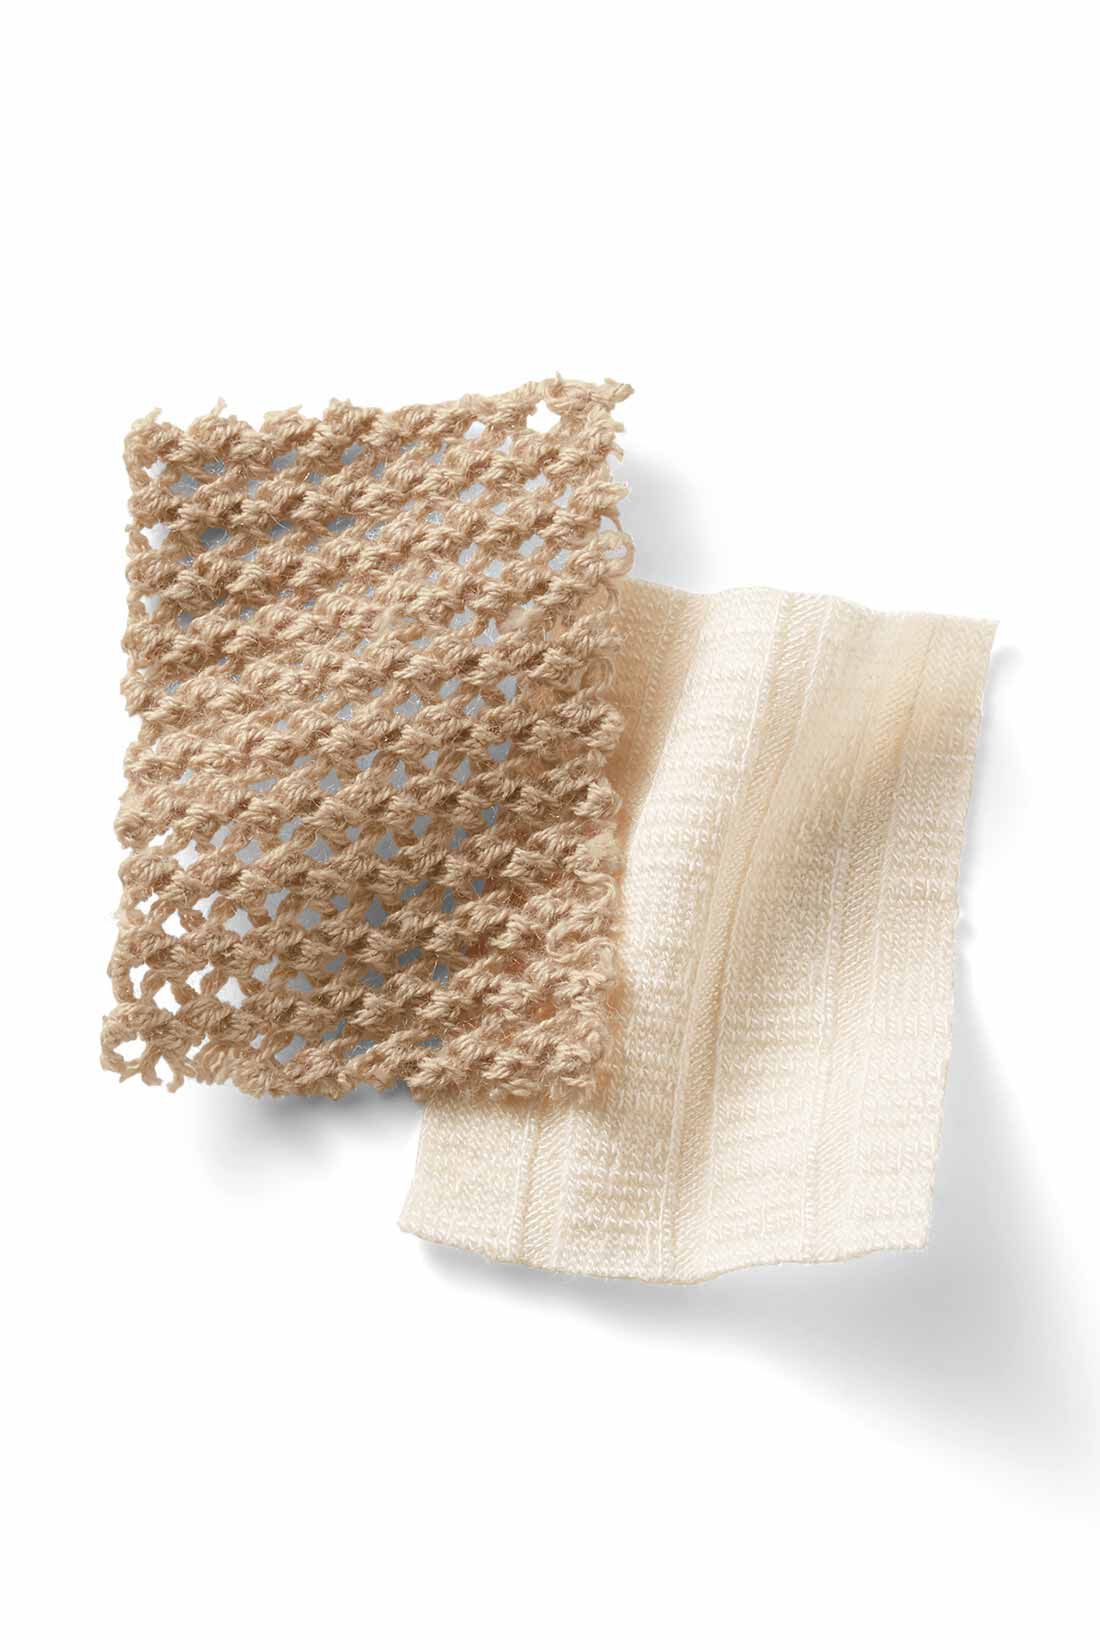 MEDE19F|MEDE19F　メッシュニットセット〈ベージュ〉|ほどよく目の詰まったメッシュ編みのニットは、さらっとしたアクリル・綿混素材でお手入れも簡単。タンクトップは薄手のワイドリブ素材。綿混で滑らかな肌ざわりです。